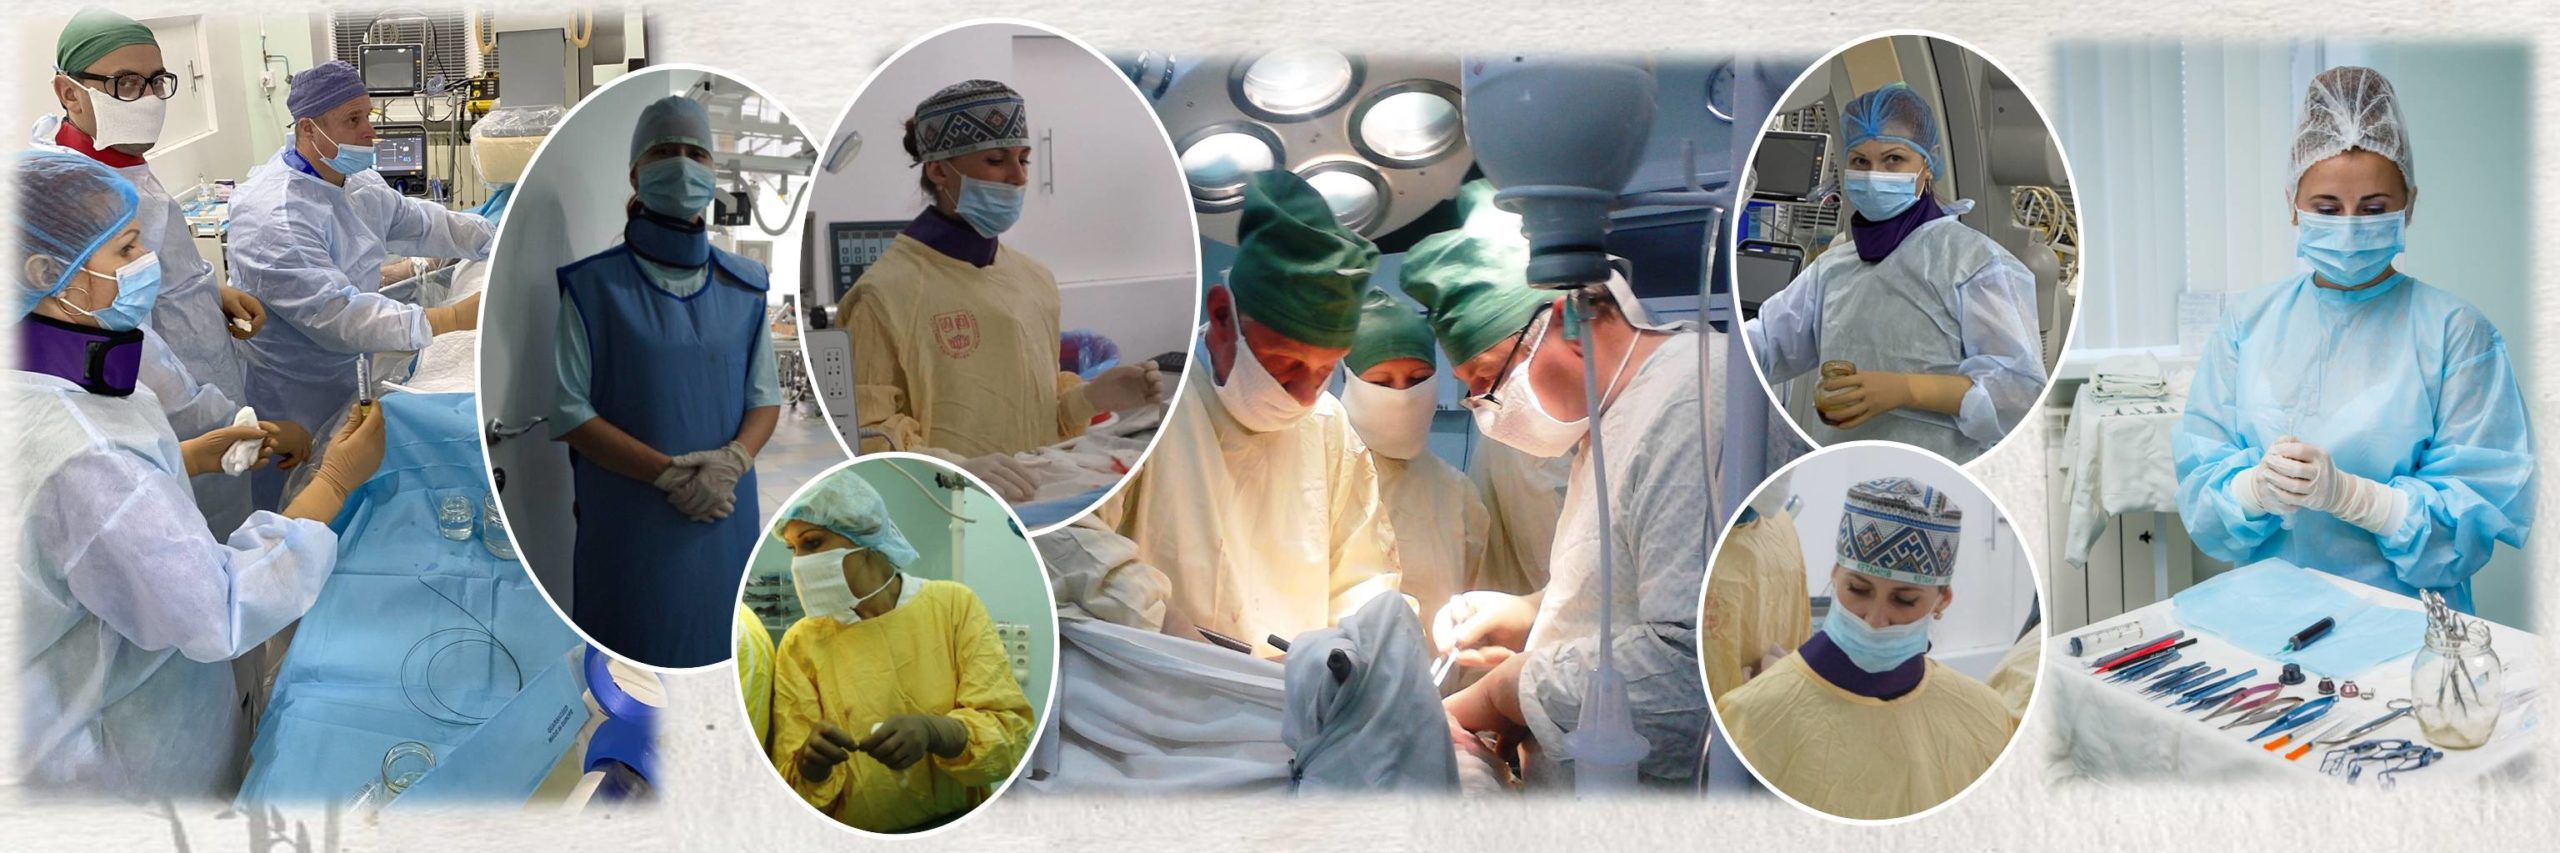 15 лютого - Міжнародний день операційної медичної сестри